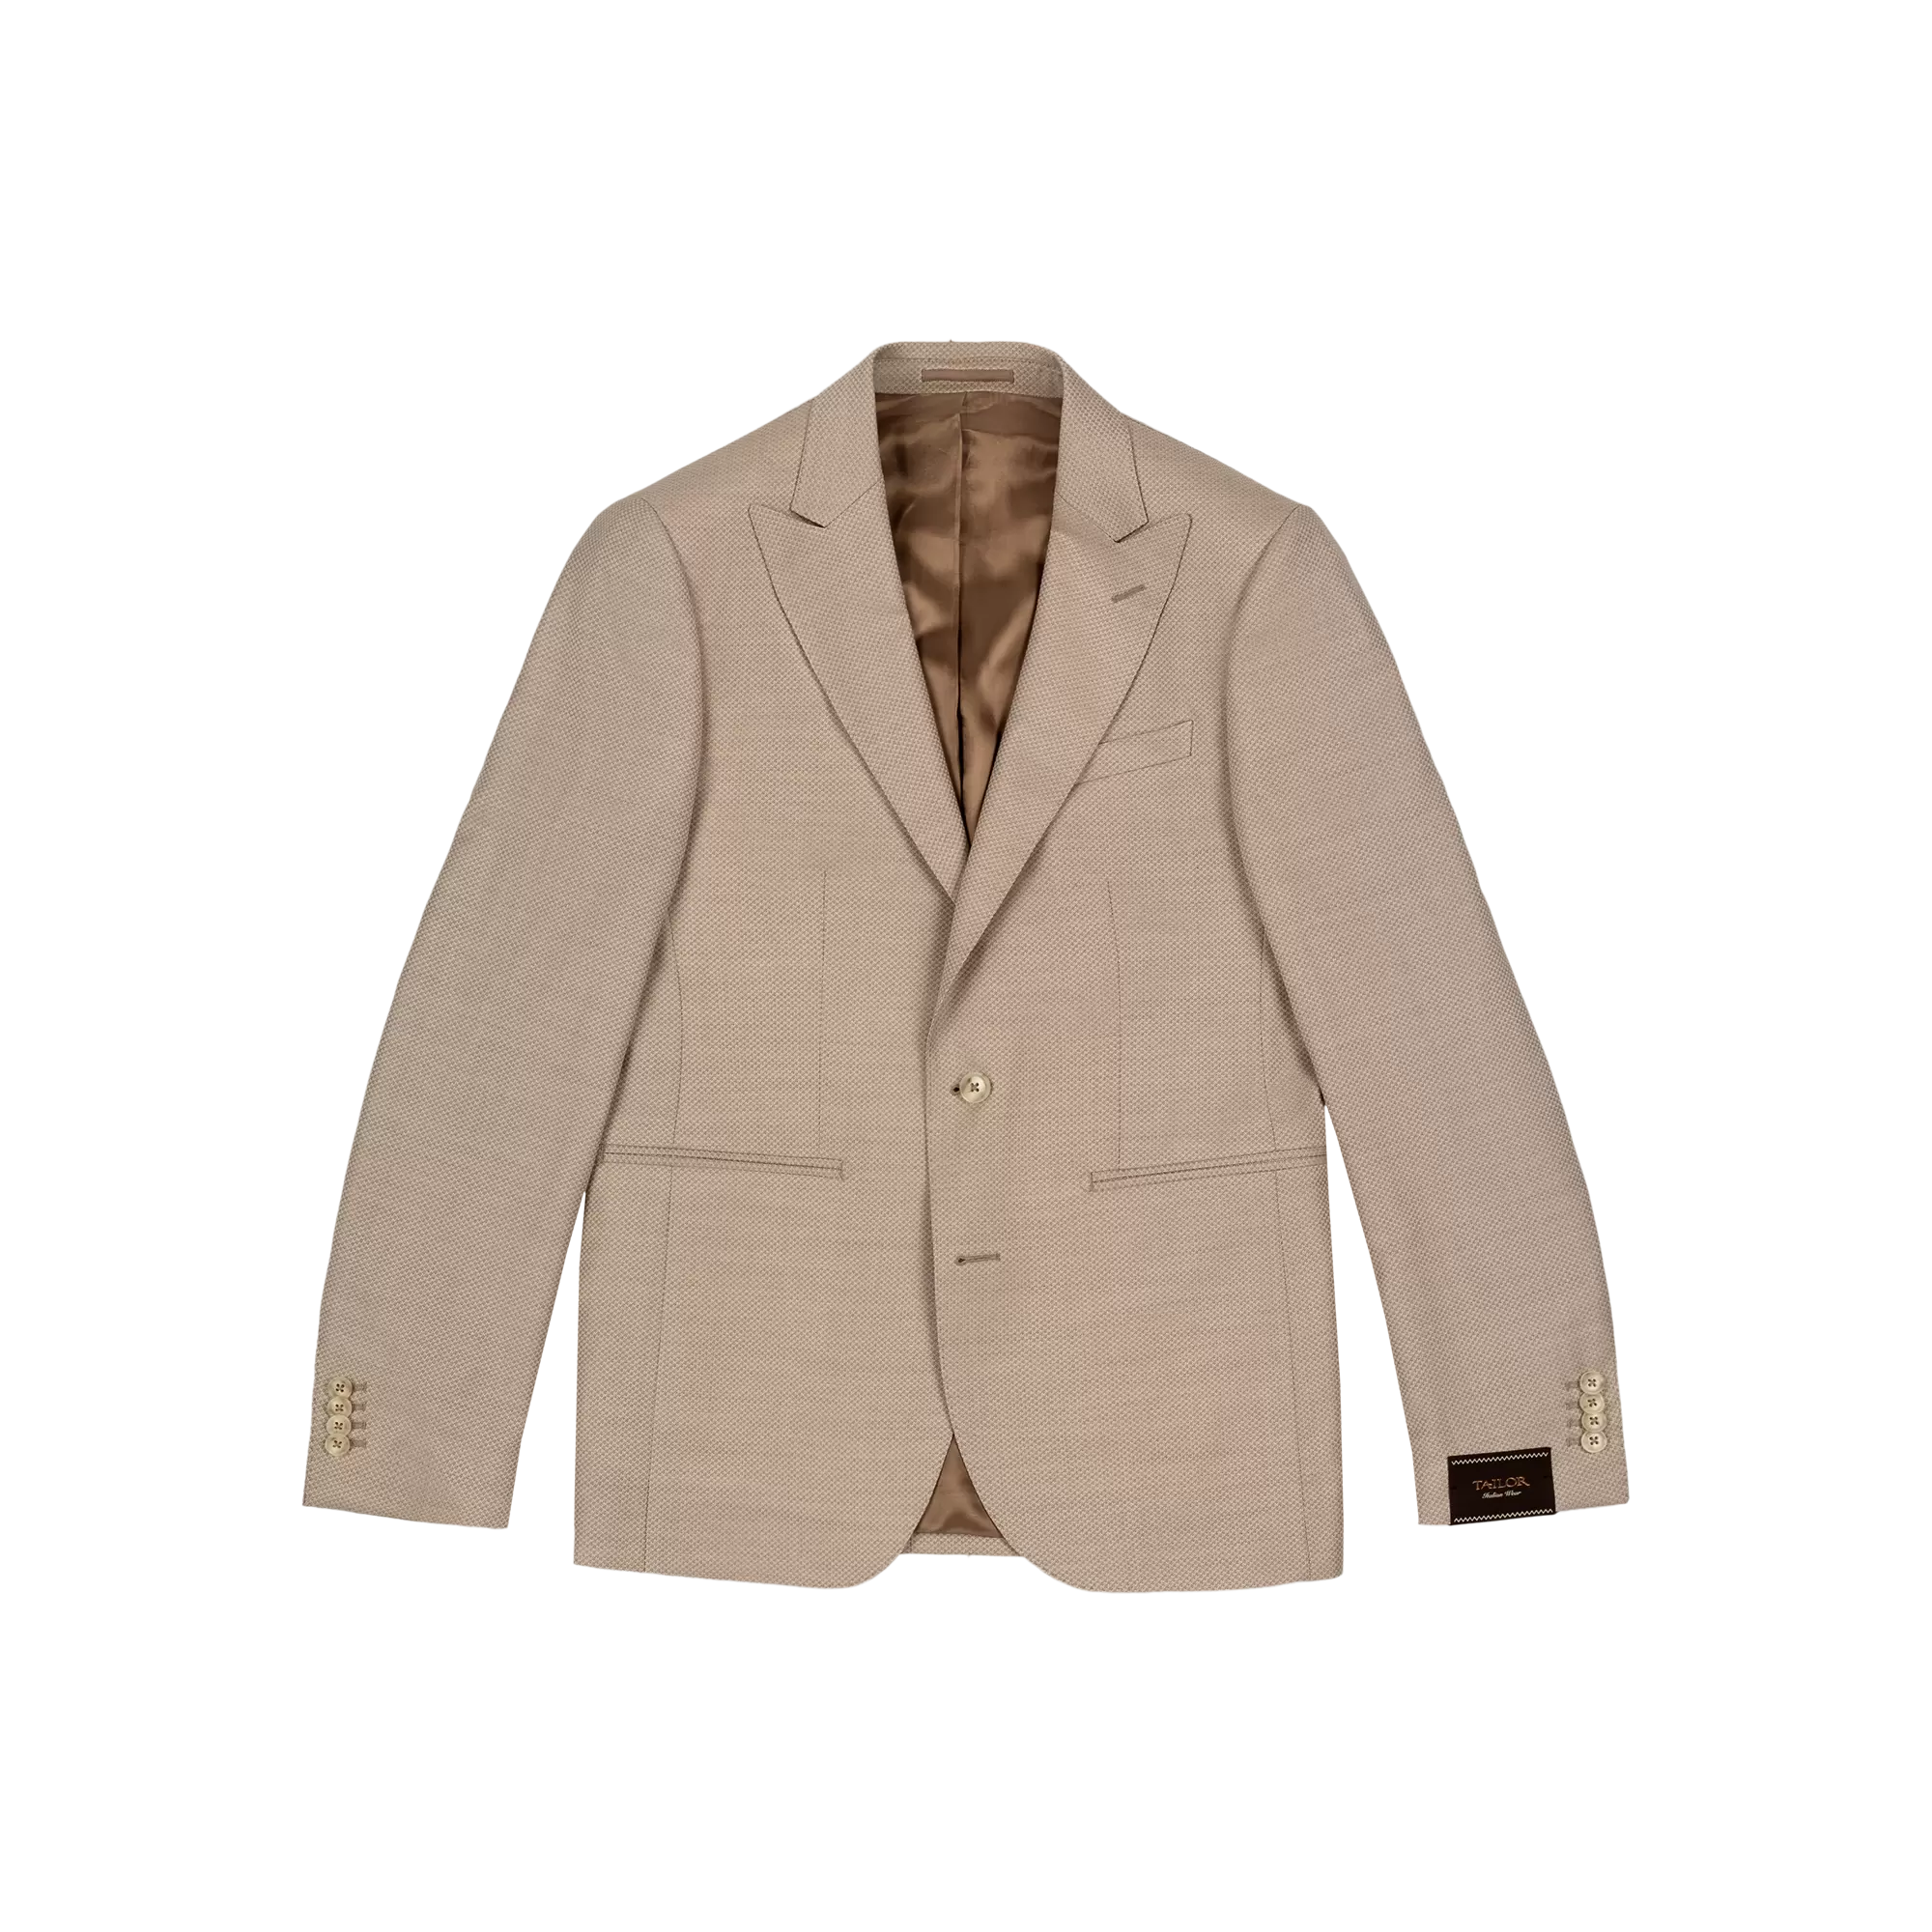 Ανδρικό Κοστούμι Με Γιλέκο Μπεζ Tailor Italian Wear